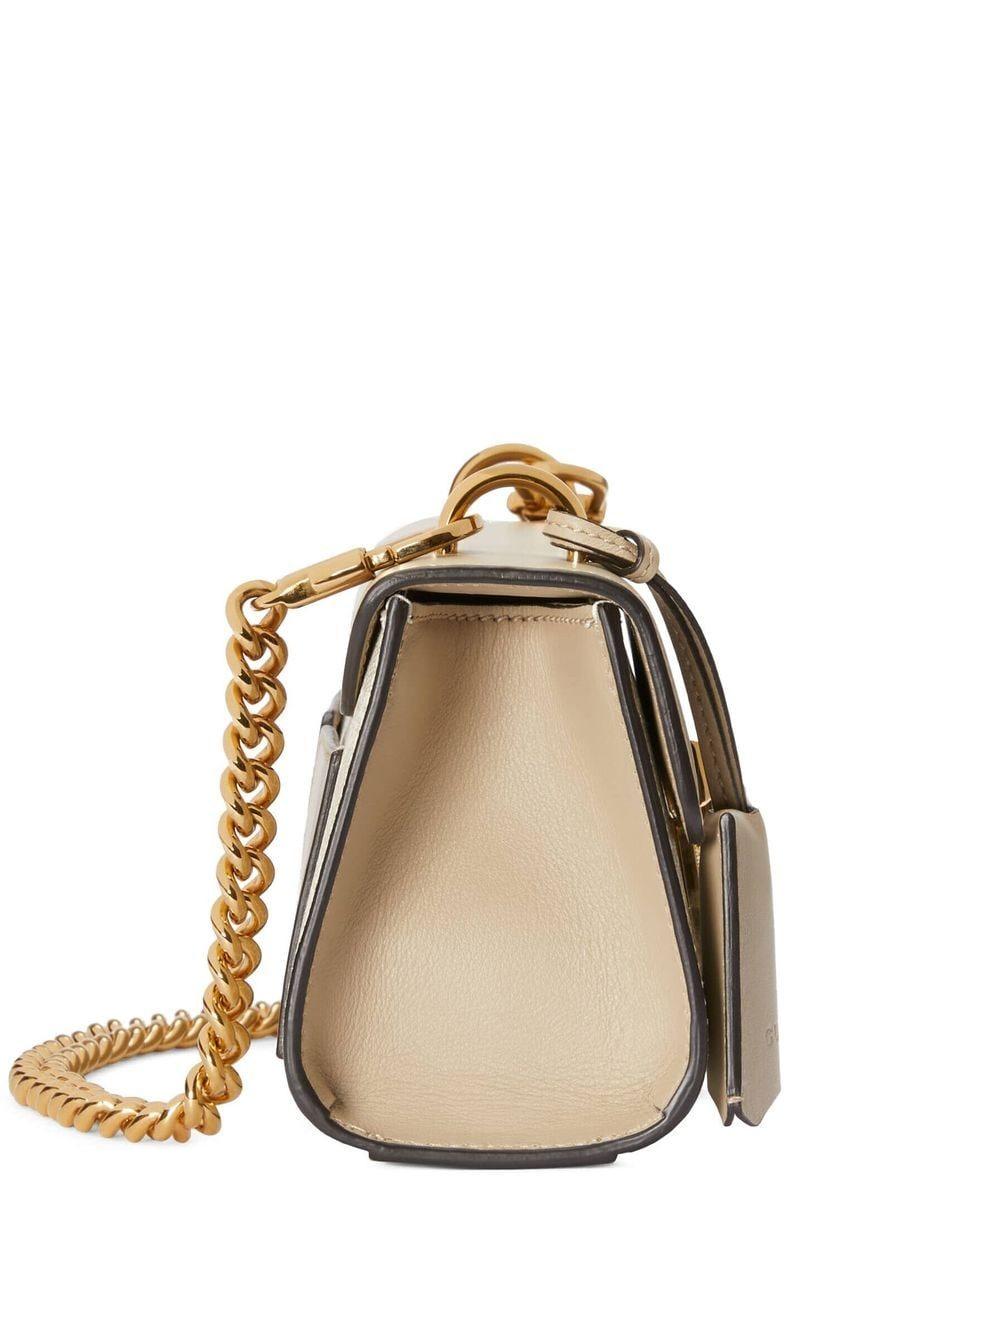 Gucci Padlock Mini Shoulder Bag in Natural